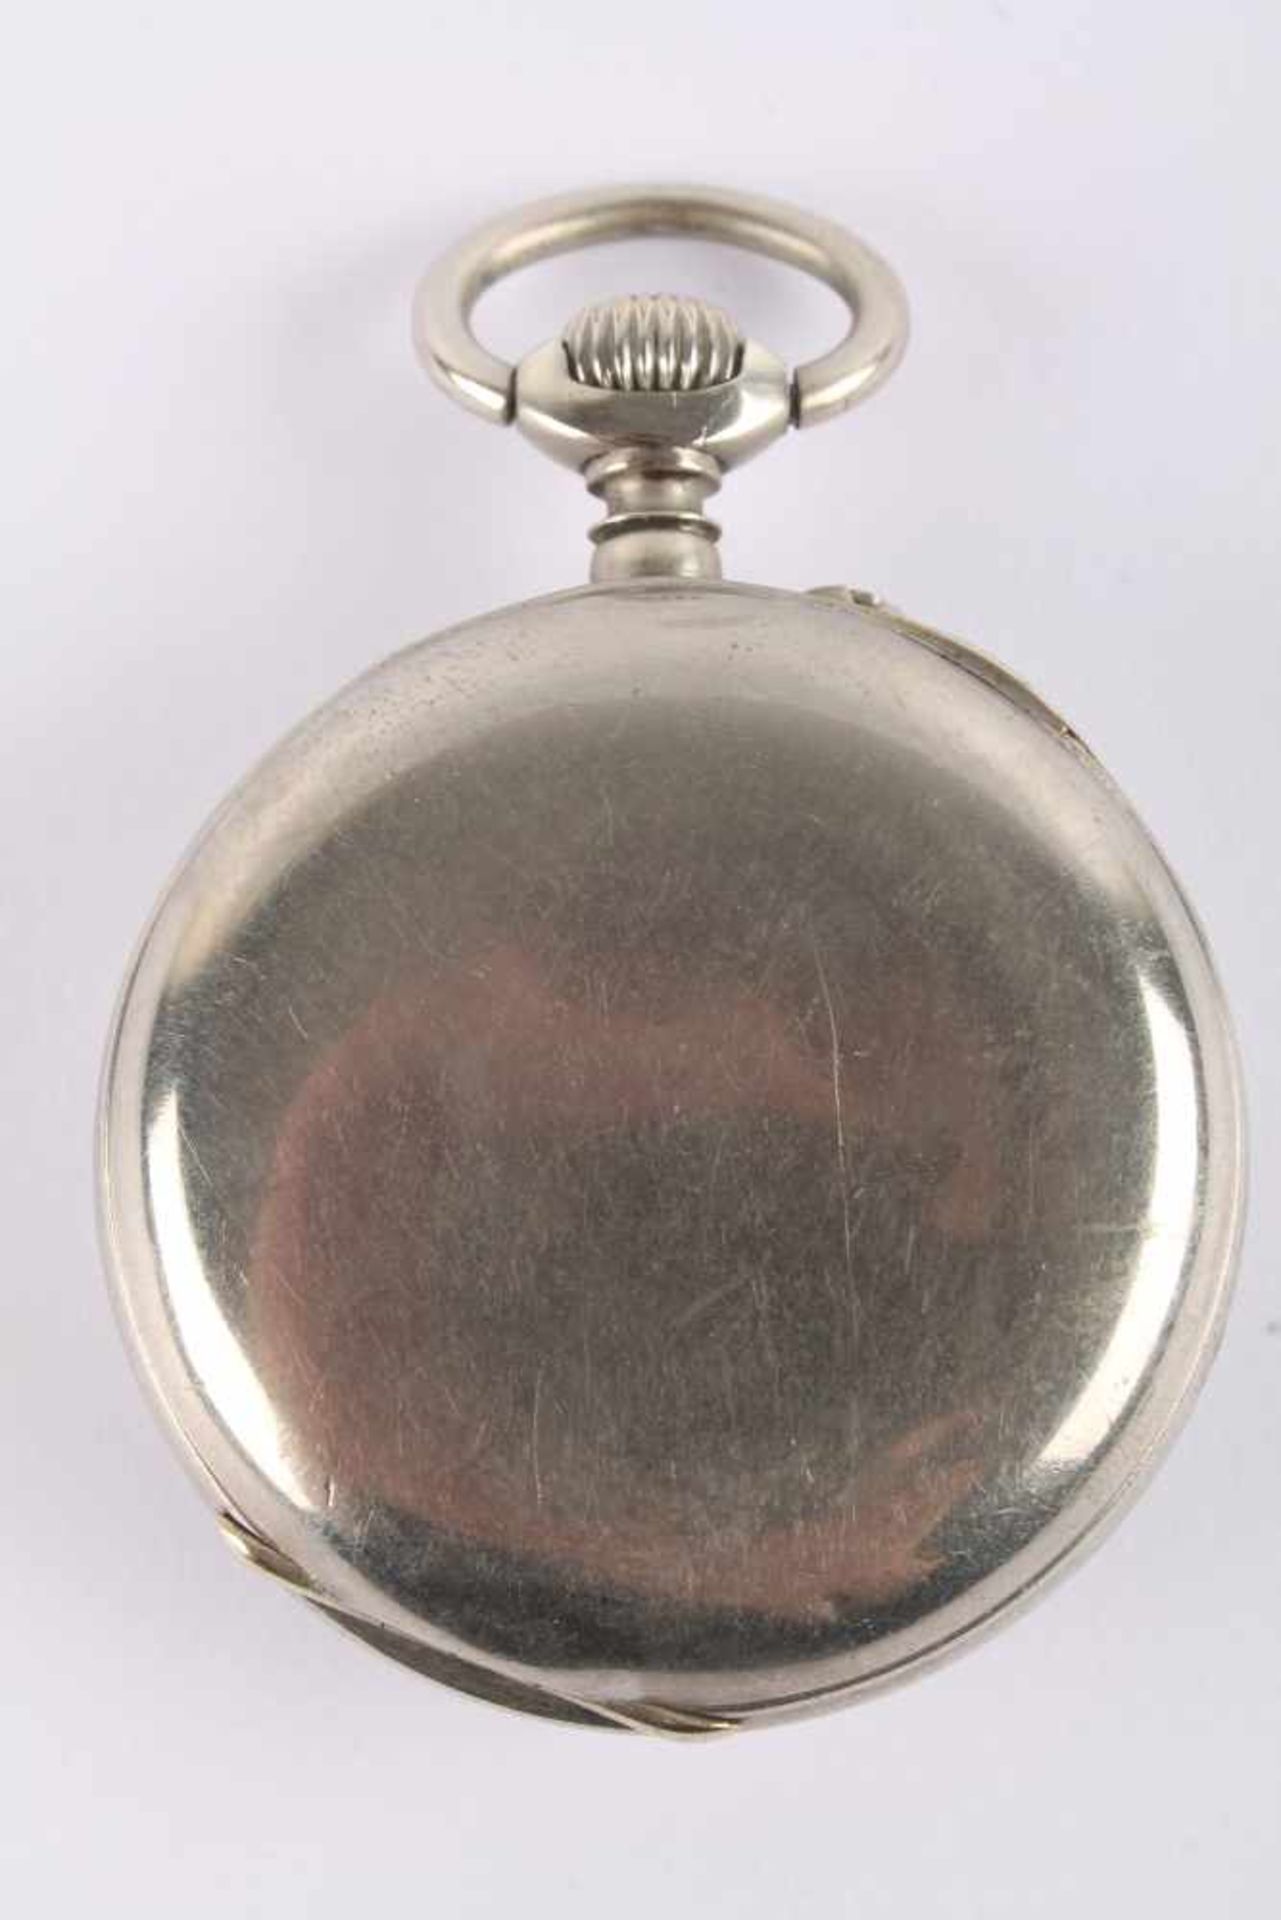 Jugendstil Taschenuhr, art nouveau pocket watch, - Image 3 of 5